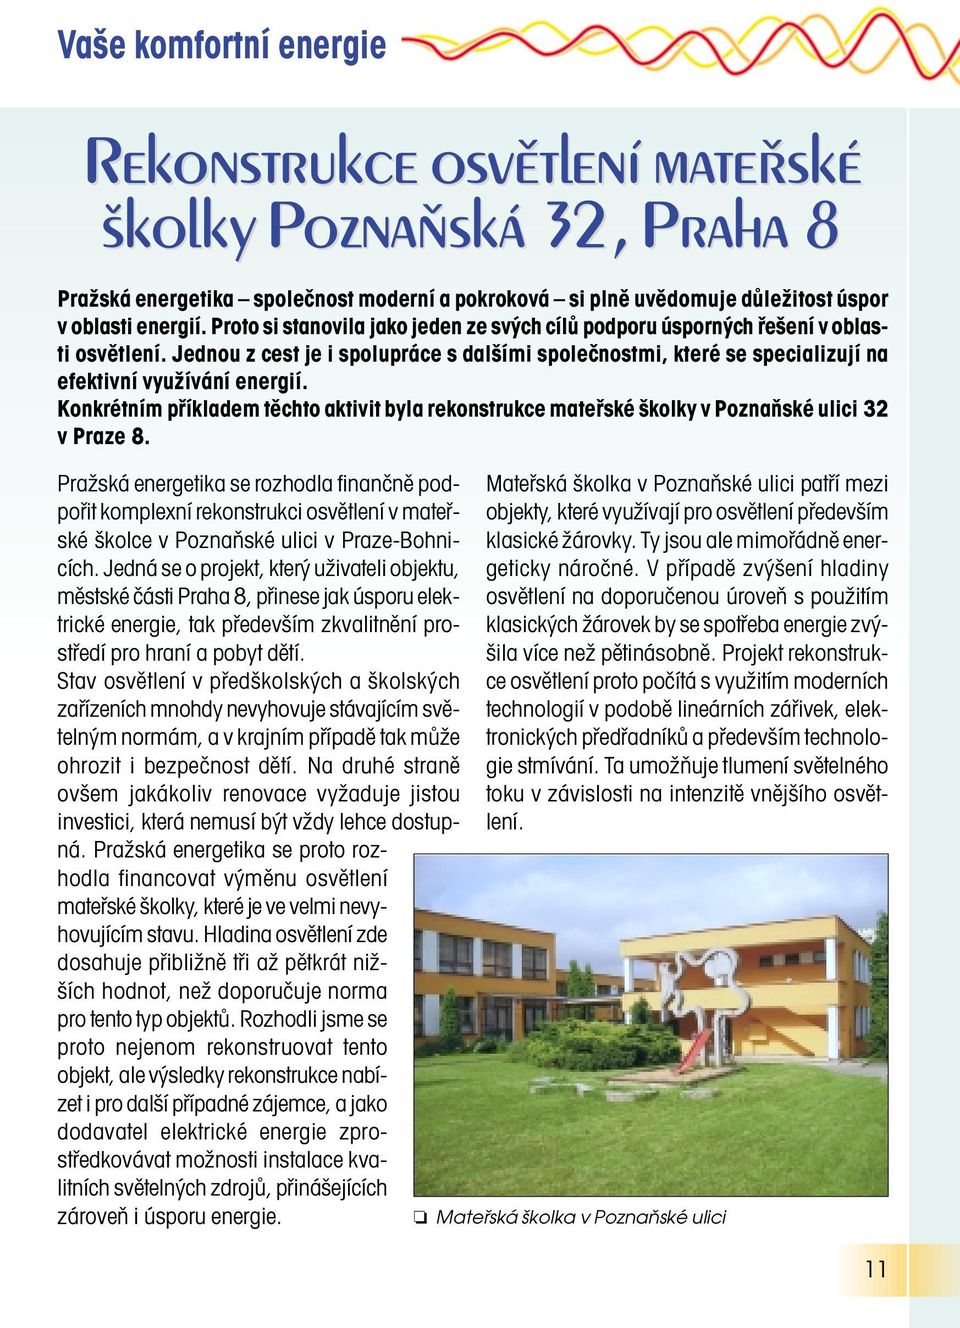 Konkrétním příkladem těchto aktivit byla rekonstrukce mateřské školky v Poznaňské ulici 32 v Praze 8.